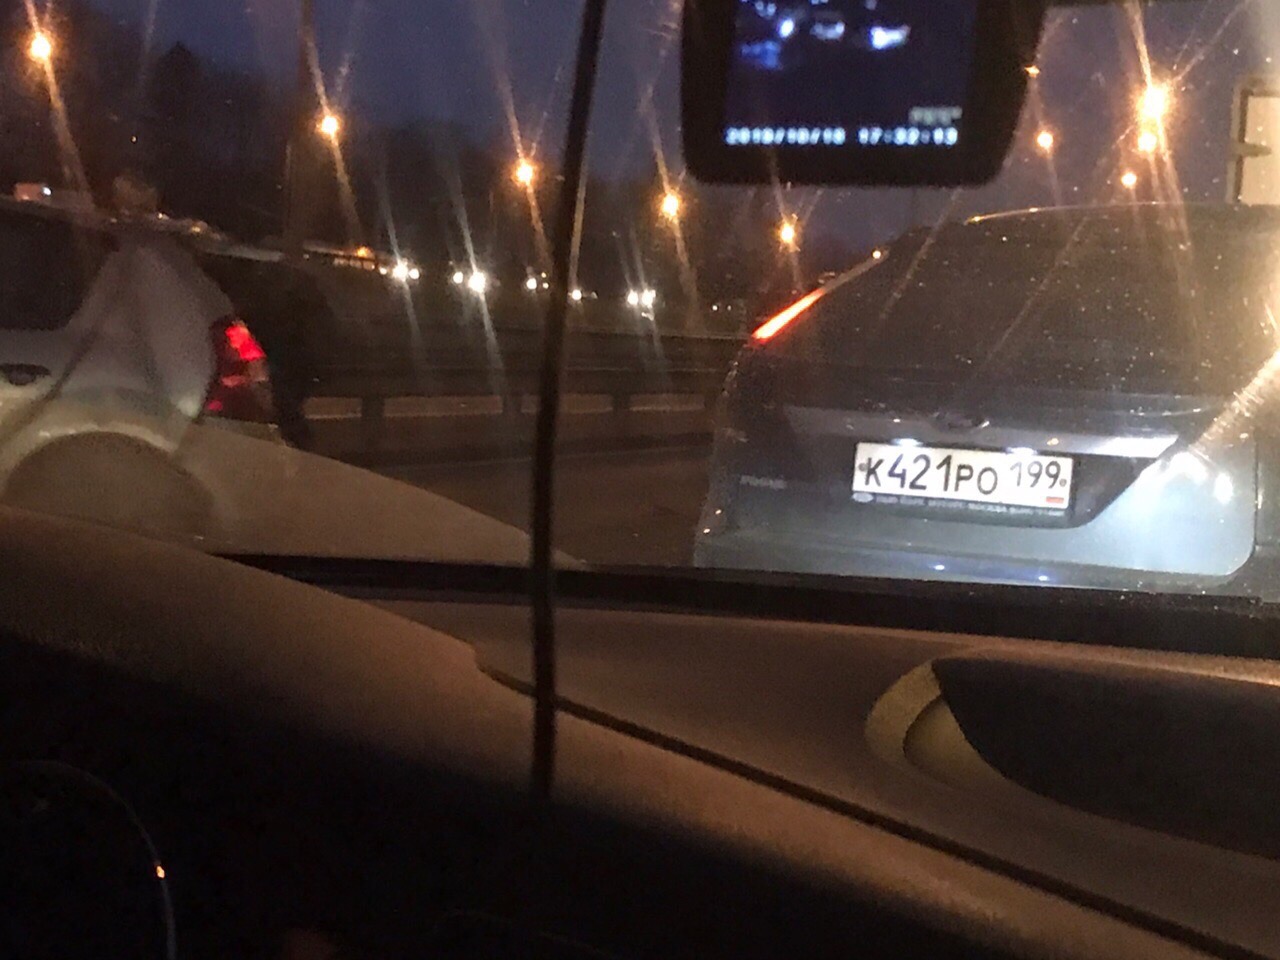 Симферополька в сторону Москвы,авария.2 полосы блокированы.Свободна 1 полоса от обочины.